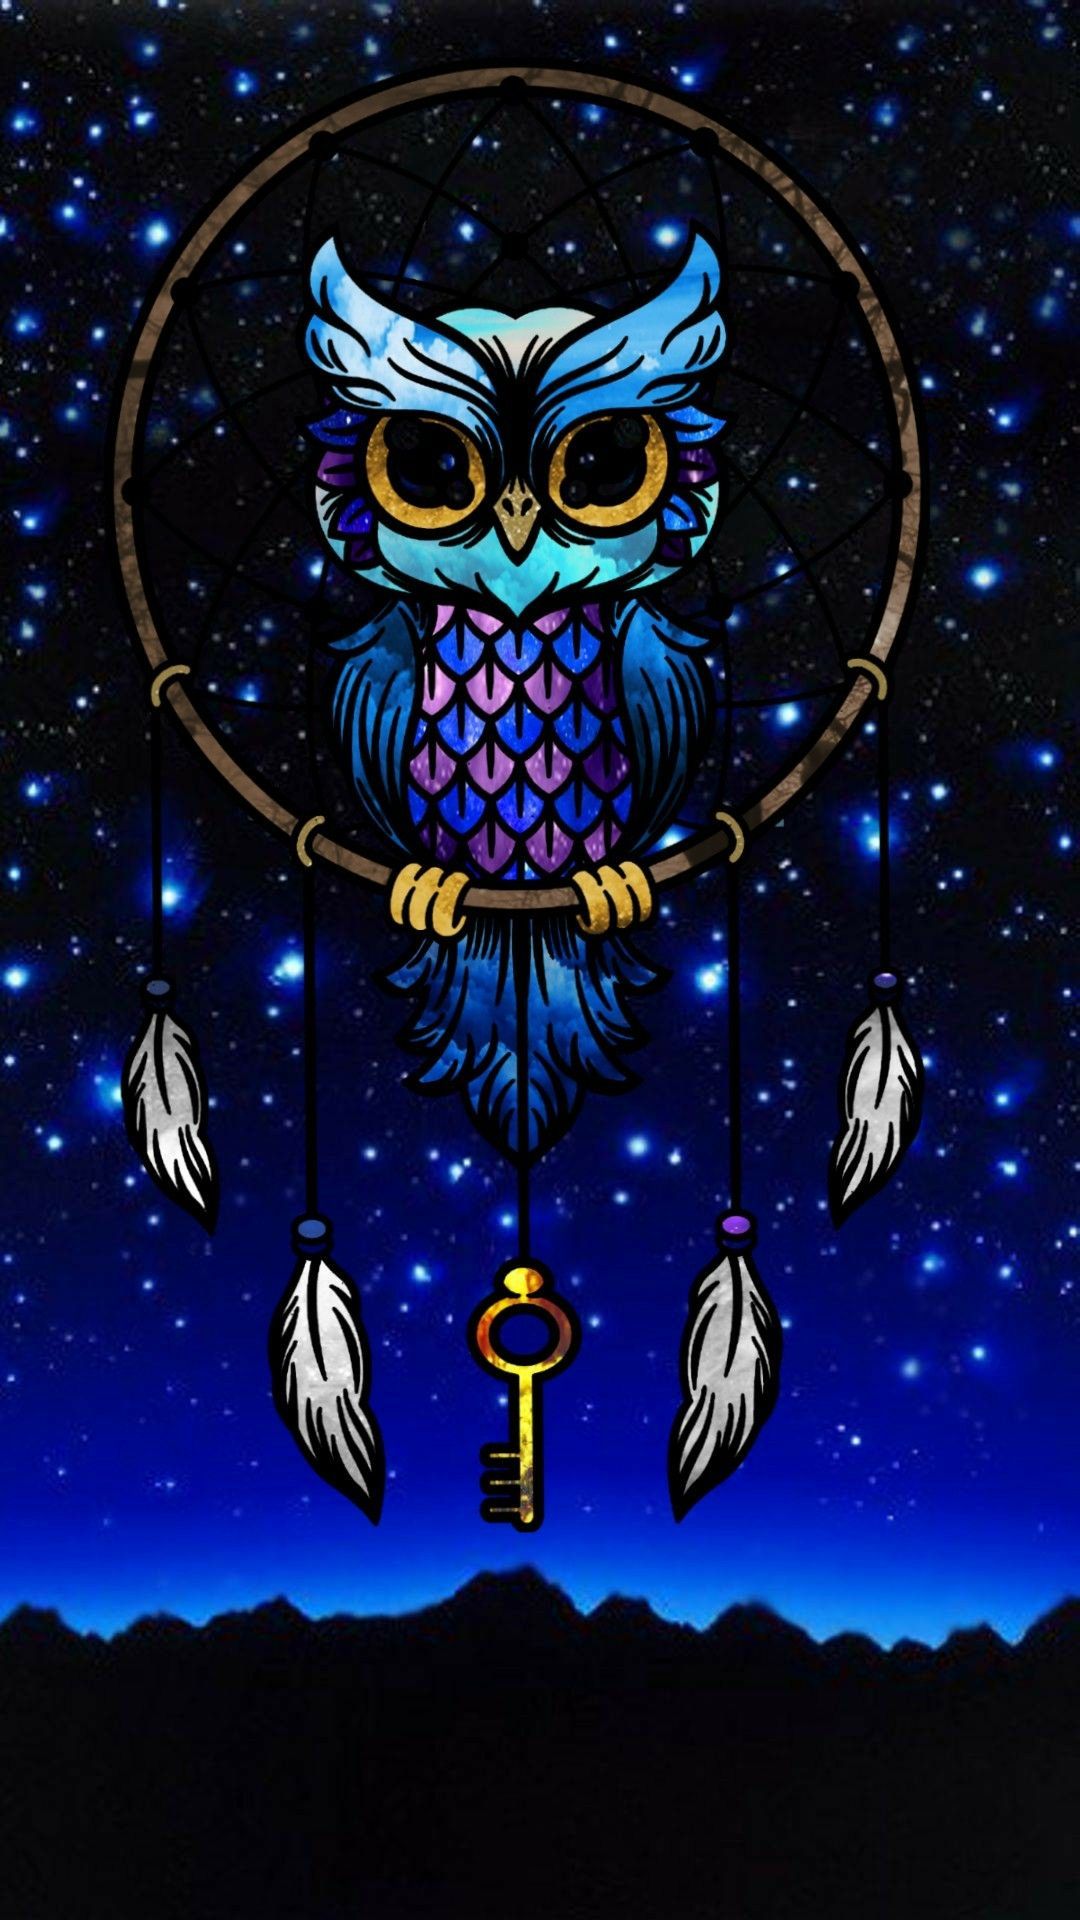  Eulen Hintergrundbild 1080x1920. Owl dreamcatcher. Dreamcatcher wallpaper, Love wallpaper background, Cute owls wallpaper